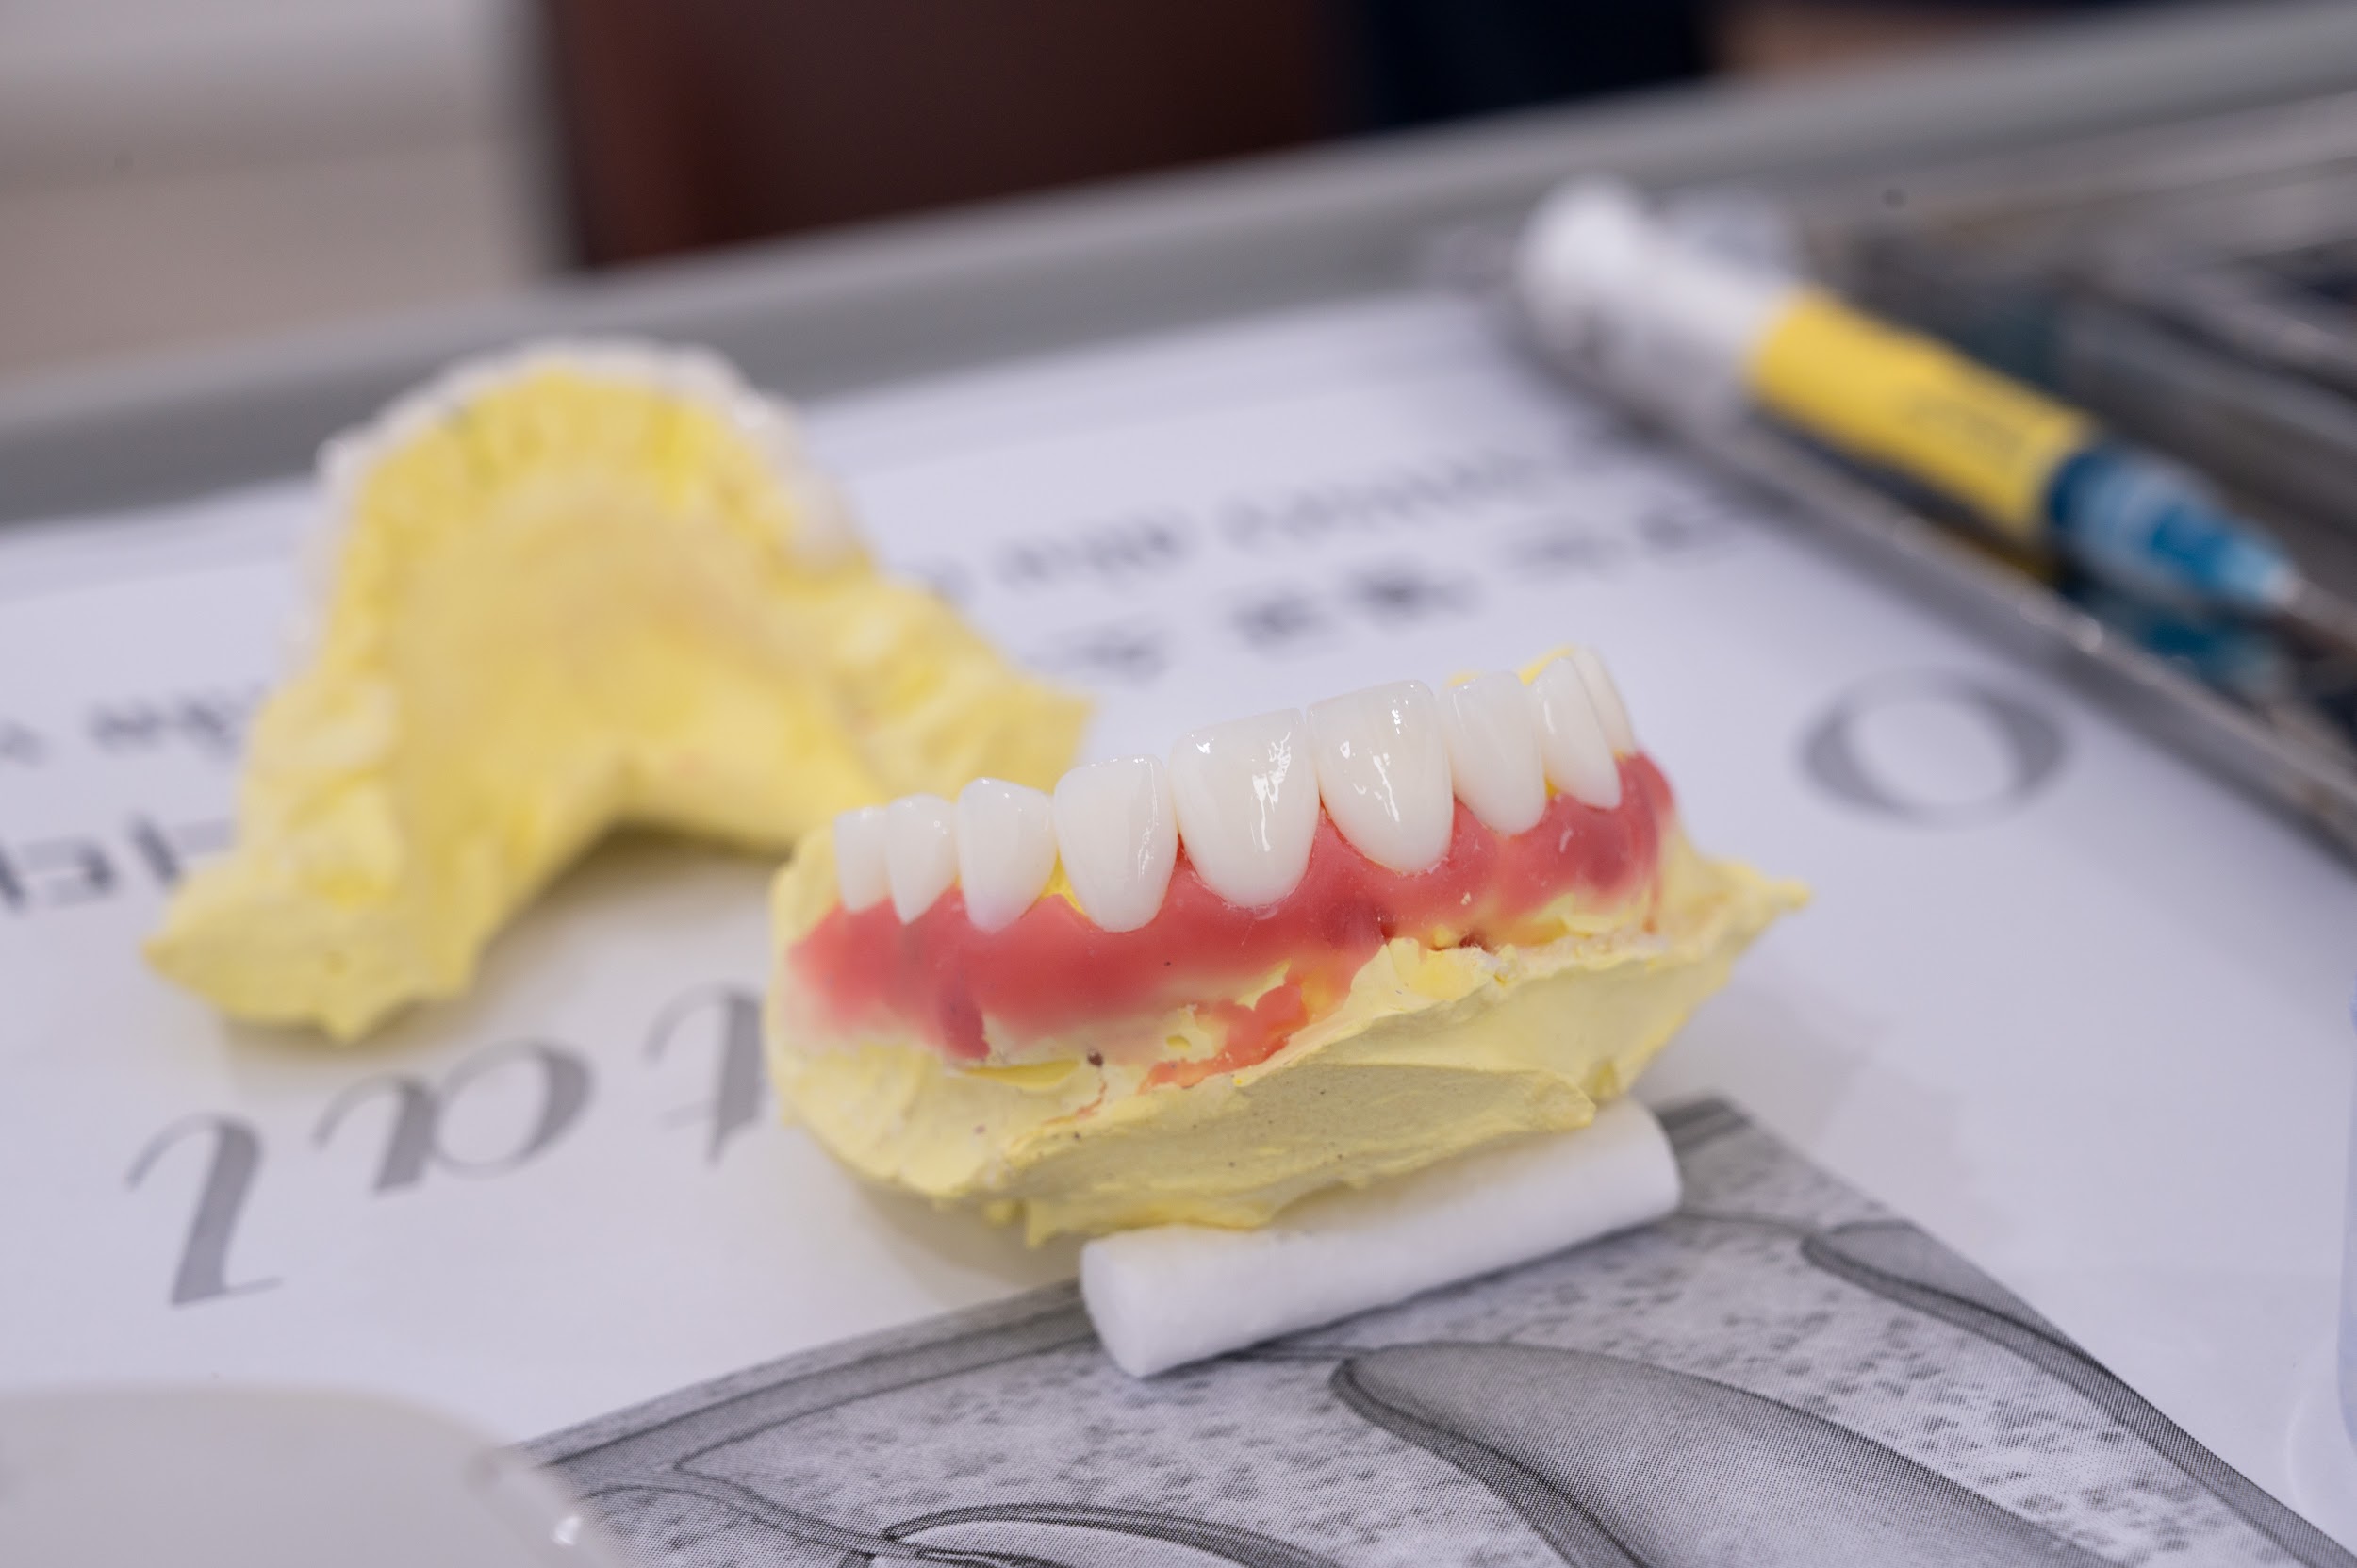 Răng sứ veneer phiên bản 0.3mm: Xu hướng thẩm mỹ răng gây sốt 2023 - 4